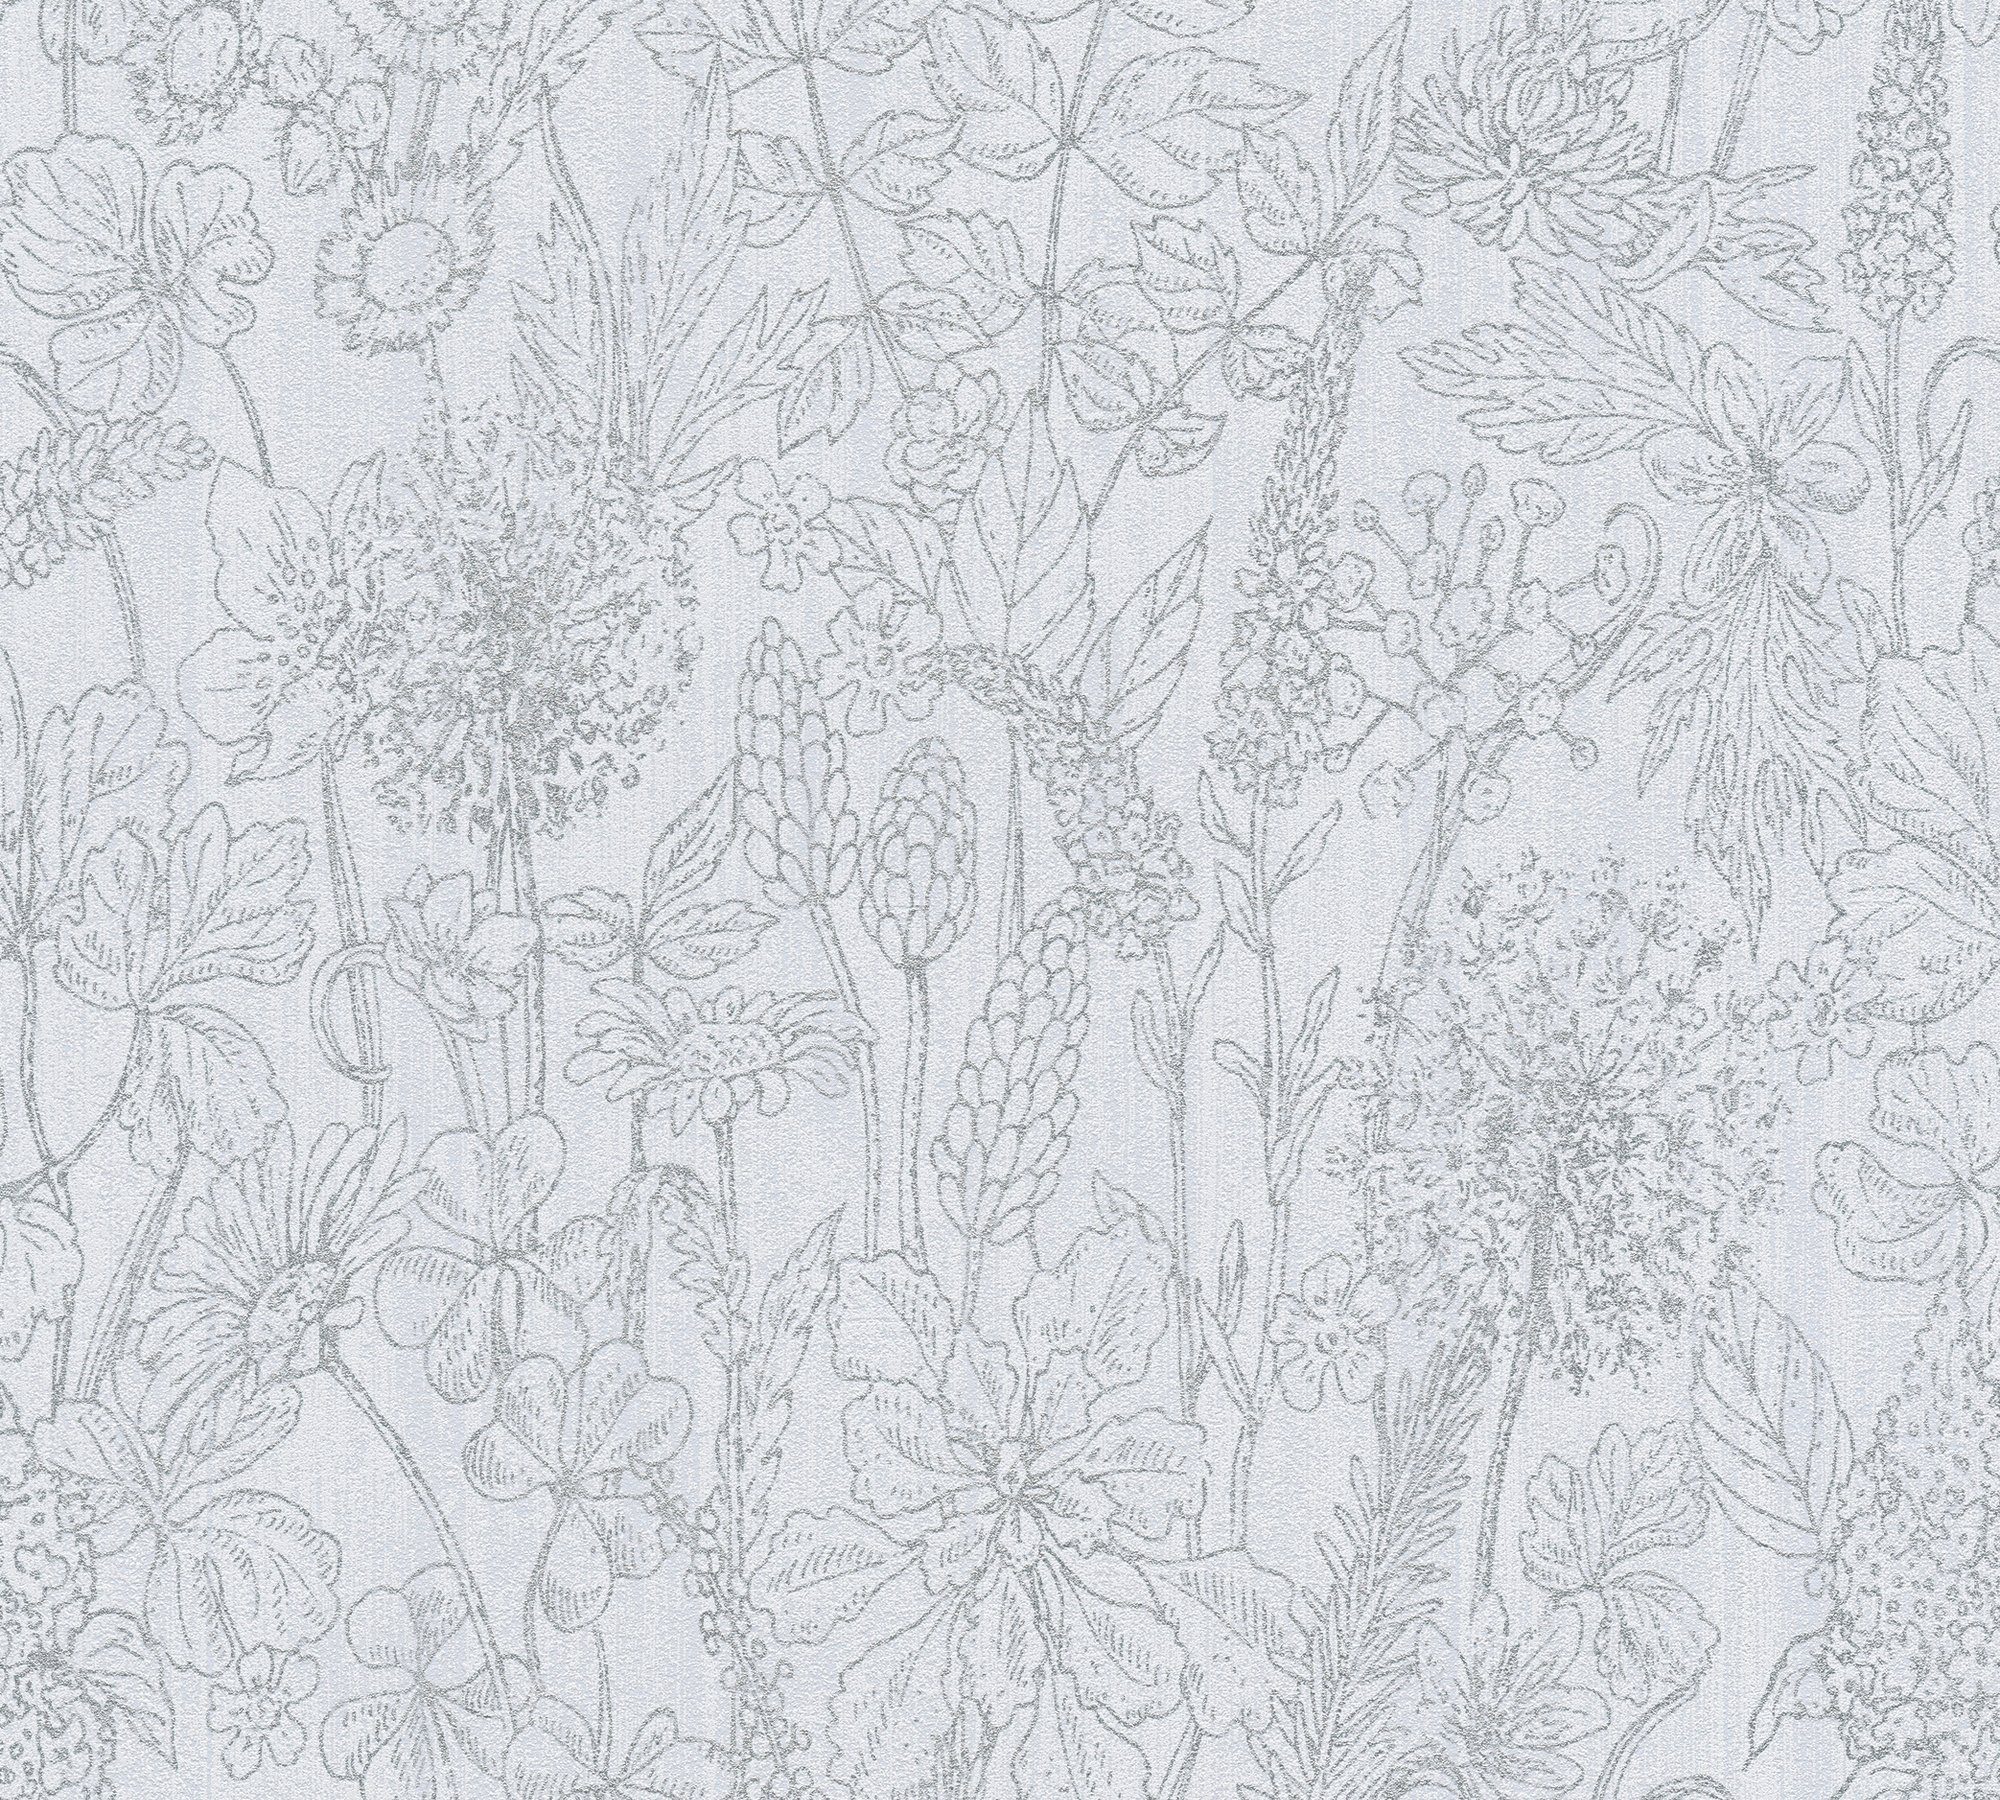 Blumen Création weiß/silber/grau Vliestapete Tapete floral, A.S. botanisch, Attractive, Glitzertapete